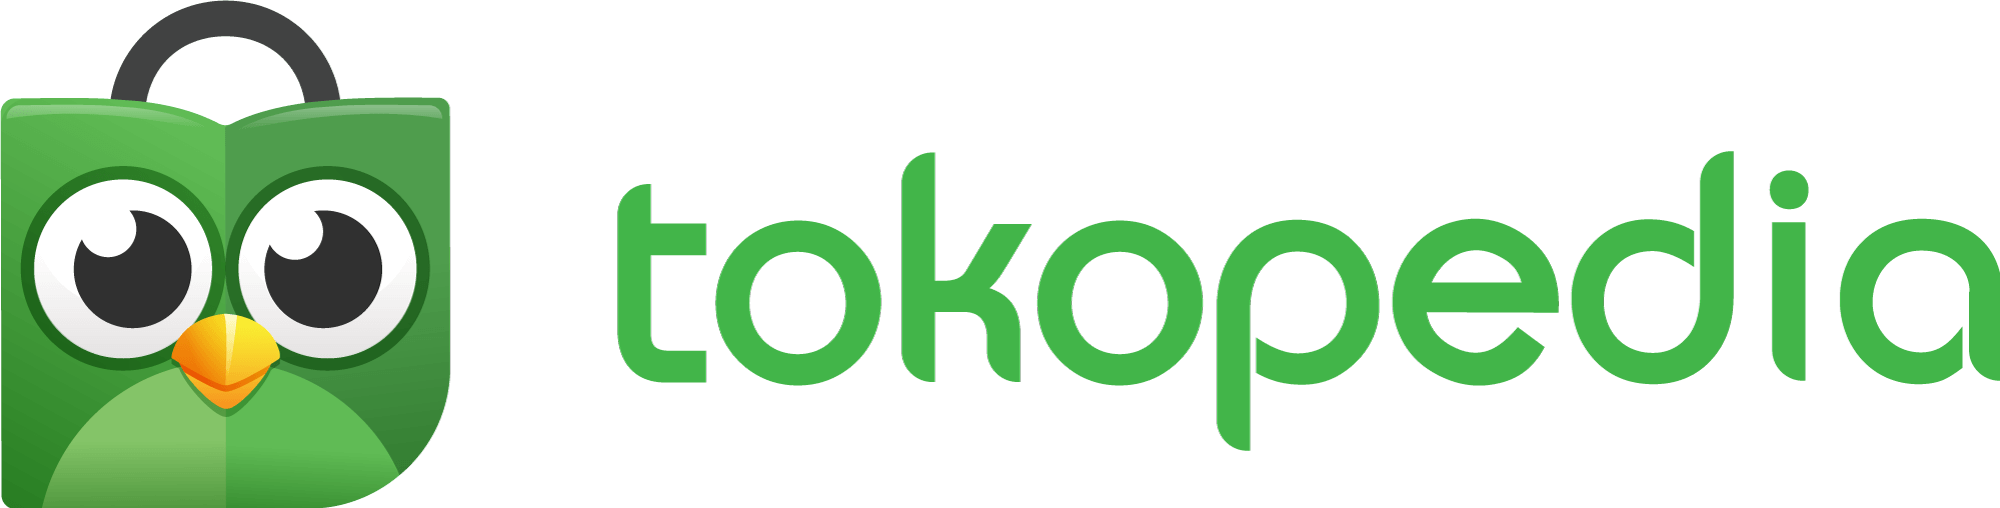 tokopedia logo transparent